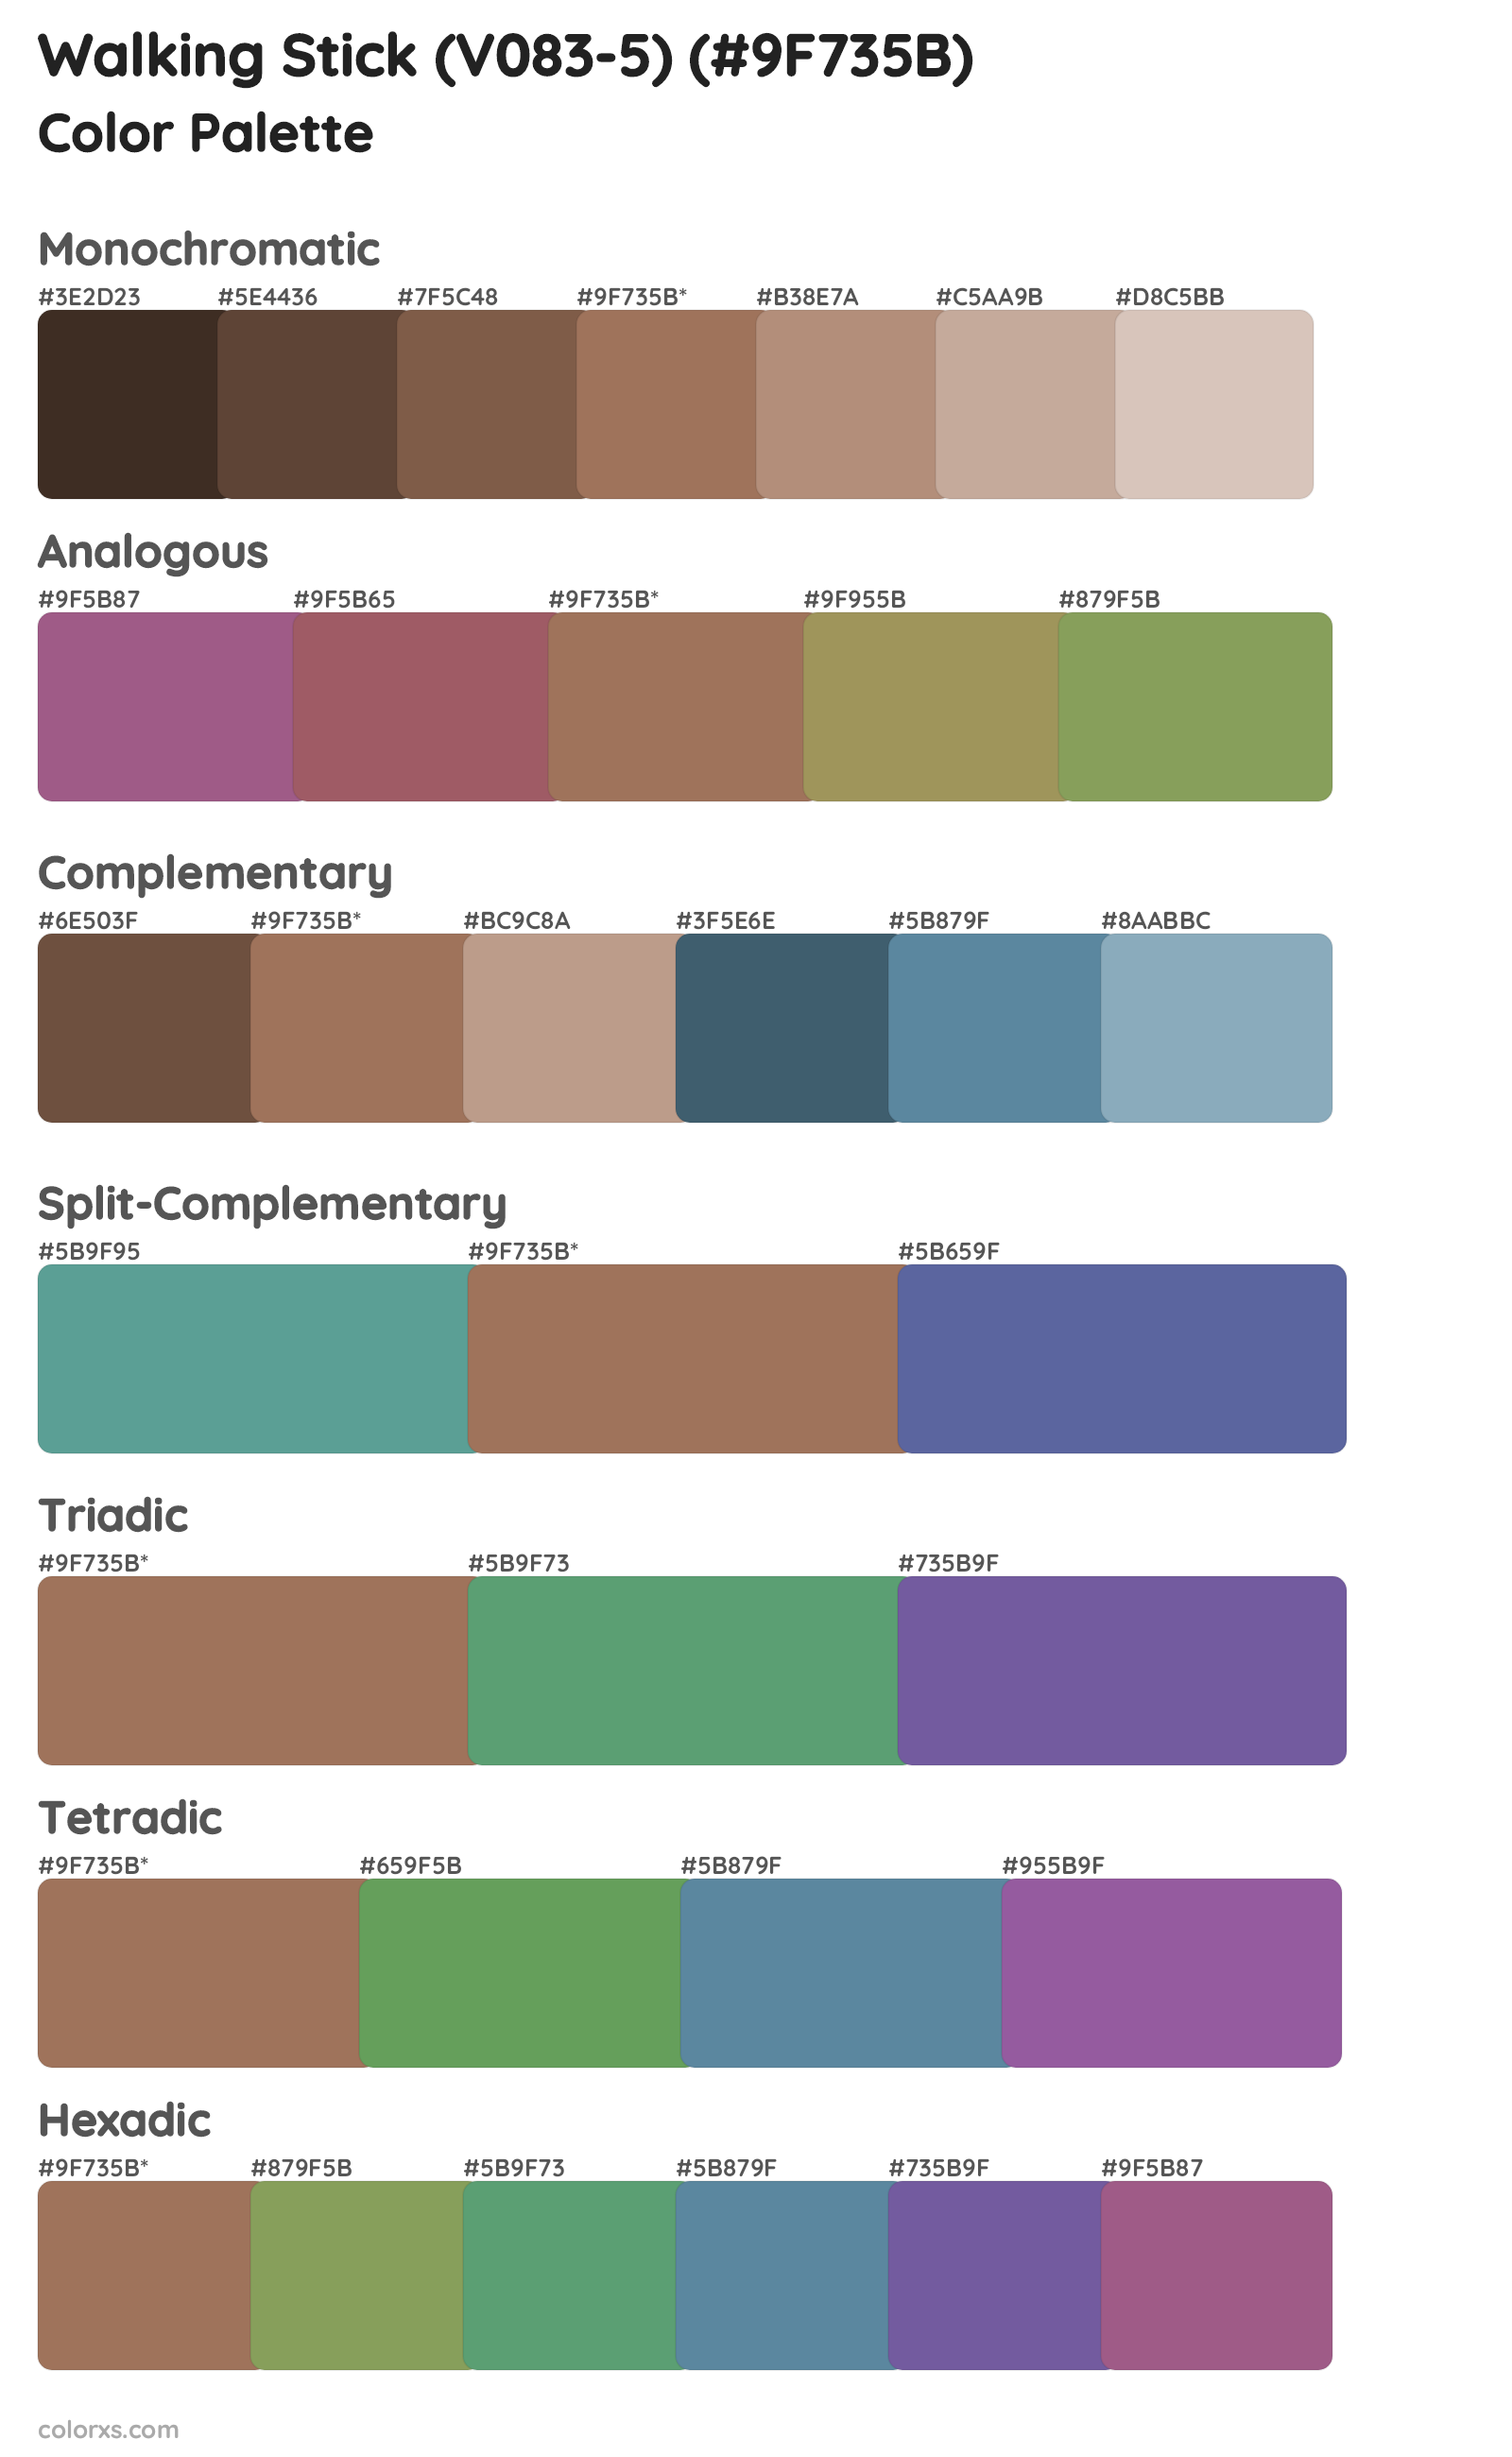 Walking Stick (V083-5) Color Scheme Palettes